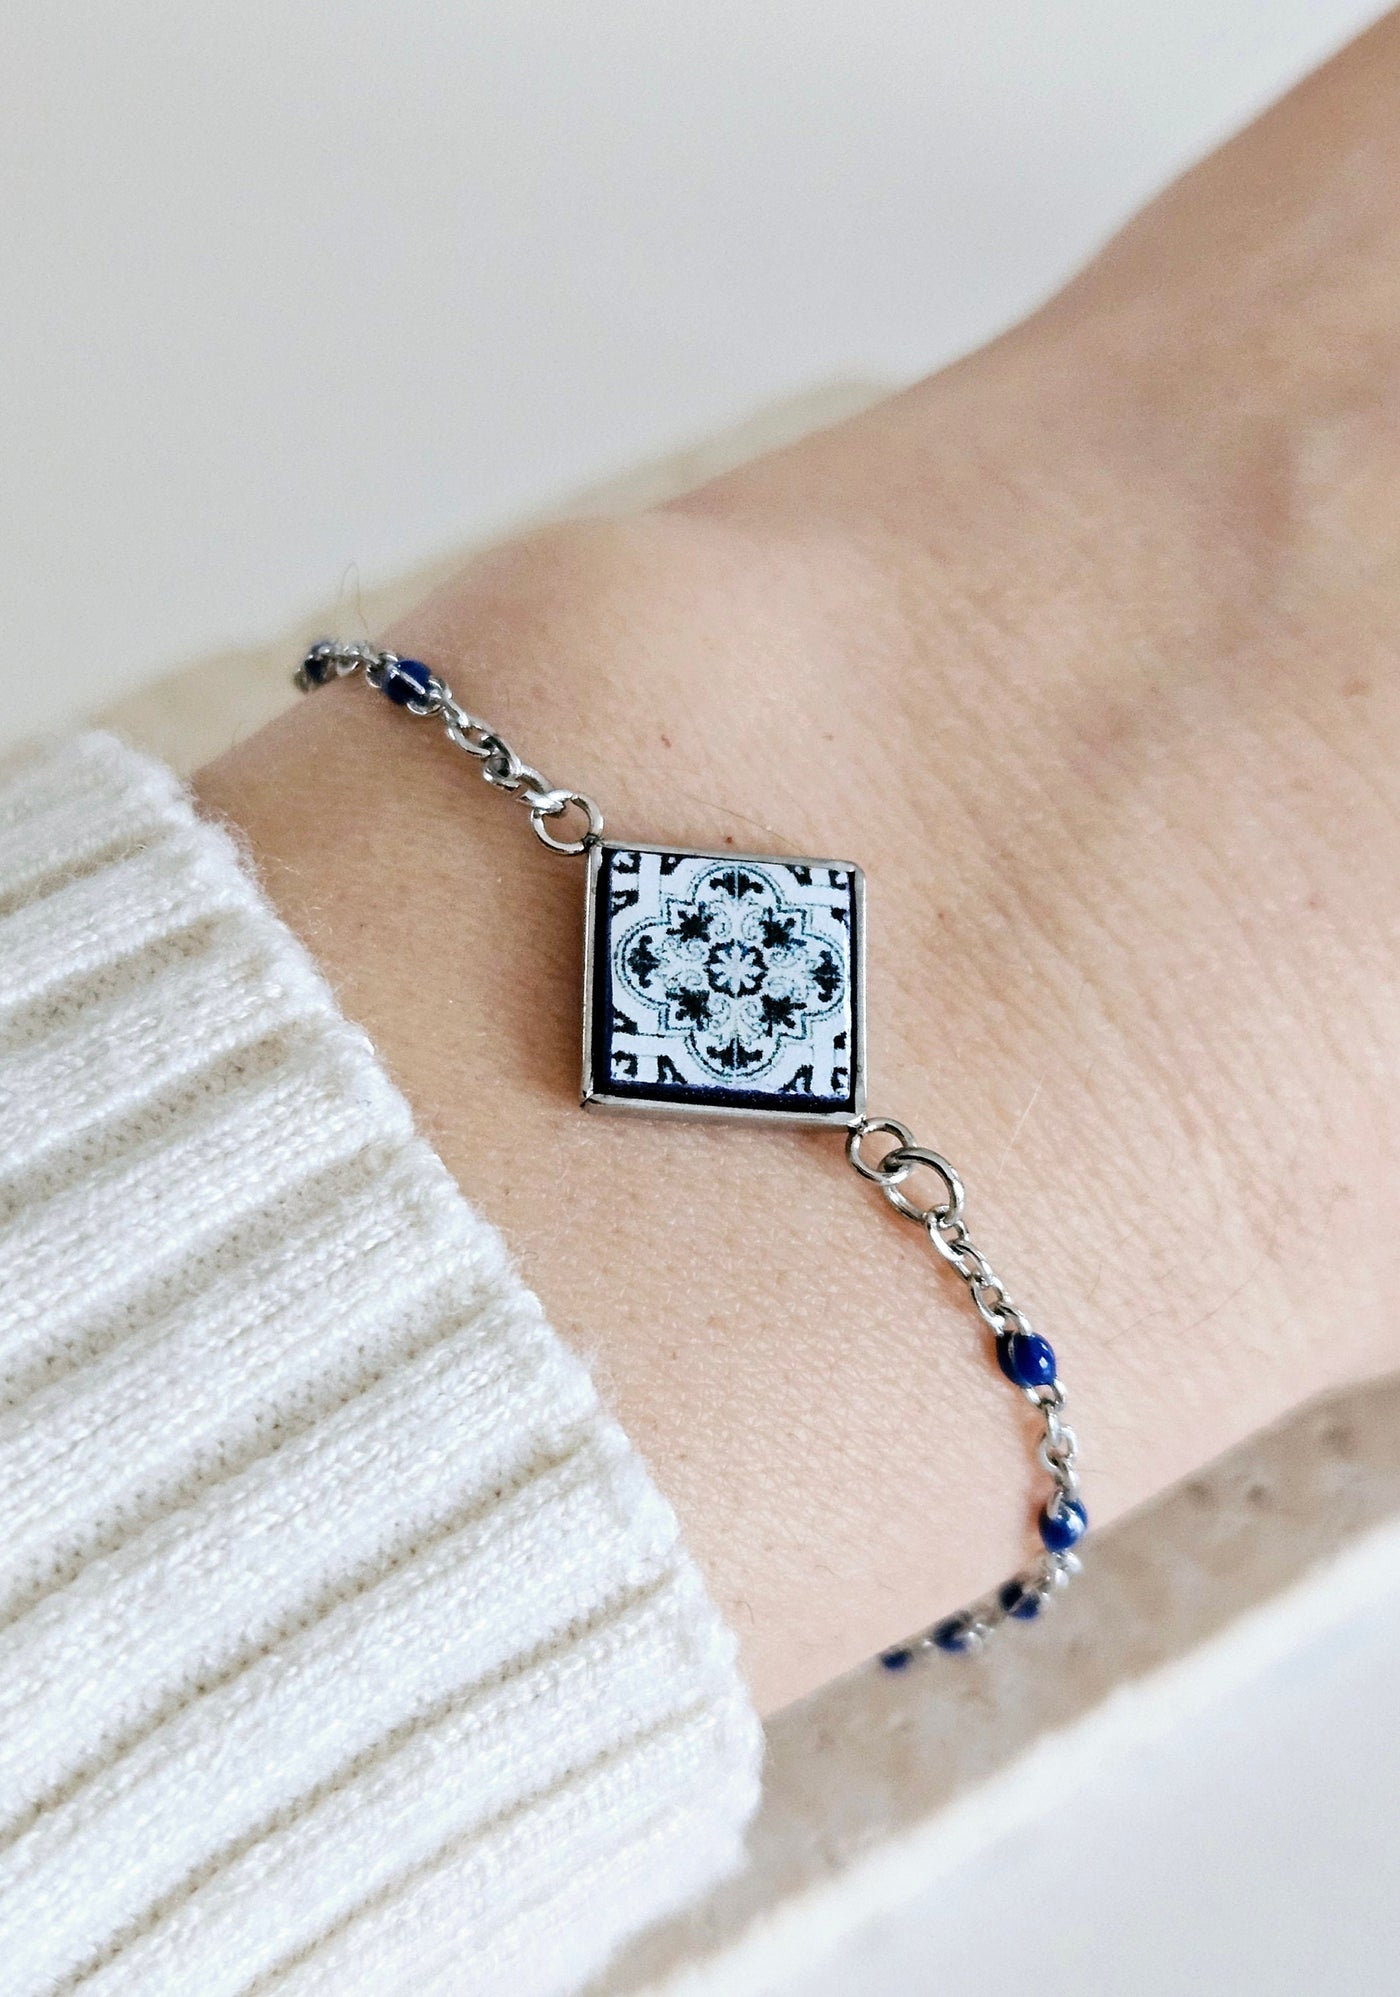 Blue Portuguese Tile Charm Bracelet Small Square Azulejo Silver STEEL Bracelet Mom Handmade Birthday Gift Blue Resin Beaded Chain Bracelet